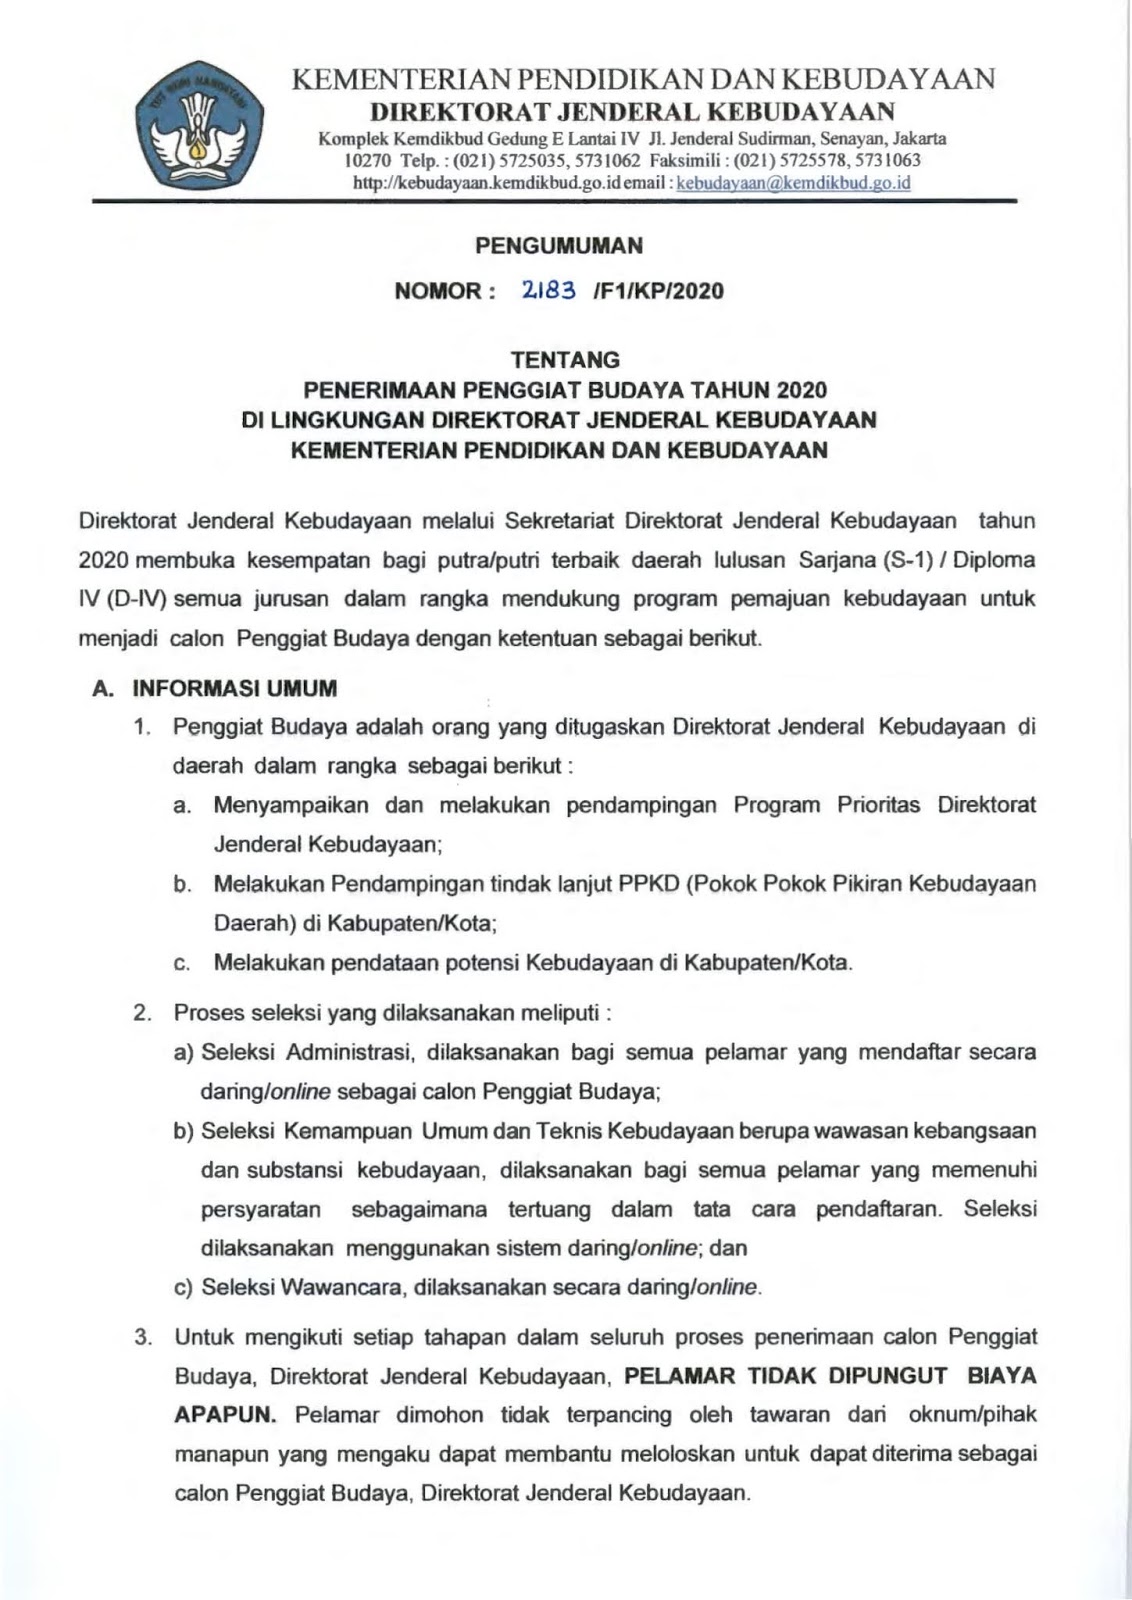 Rekrutmen Non Pns Ditjen Kebudayaan Kementerian Pendidikan Dan Kebudayaan Besar Besaran Bulan Maret 2020 Untuk 247 Kabupten Kota Se Indonesia Rekrutmen Lowongan Kerja Bulan Juli 2021